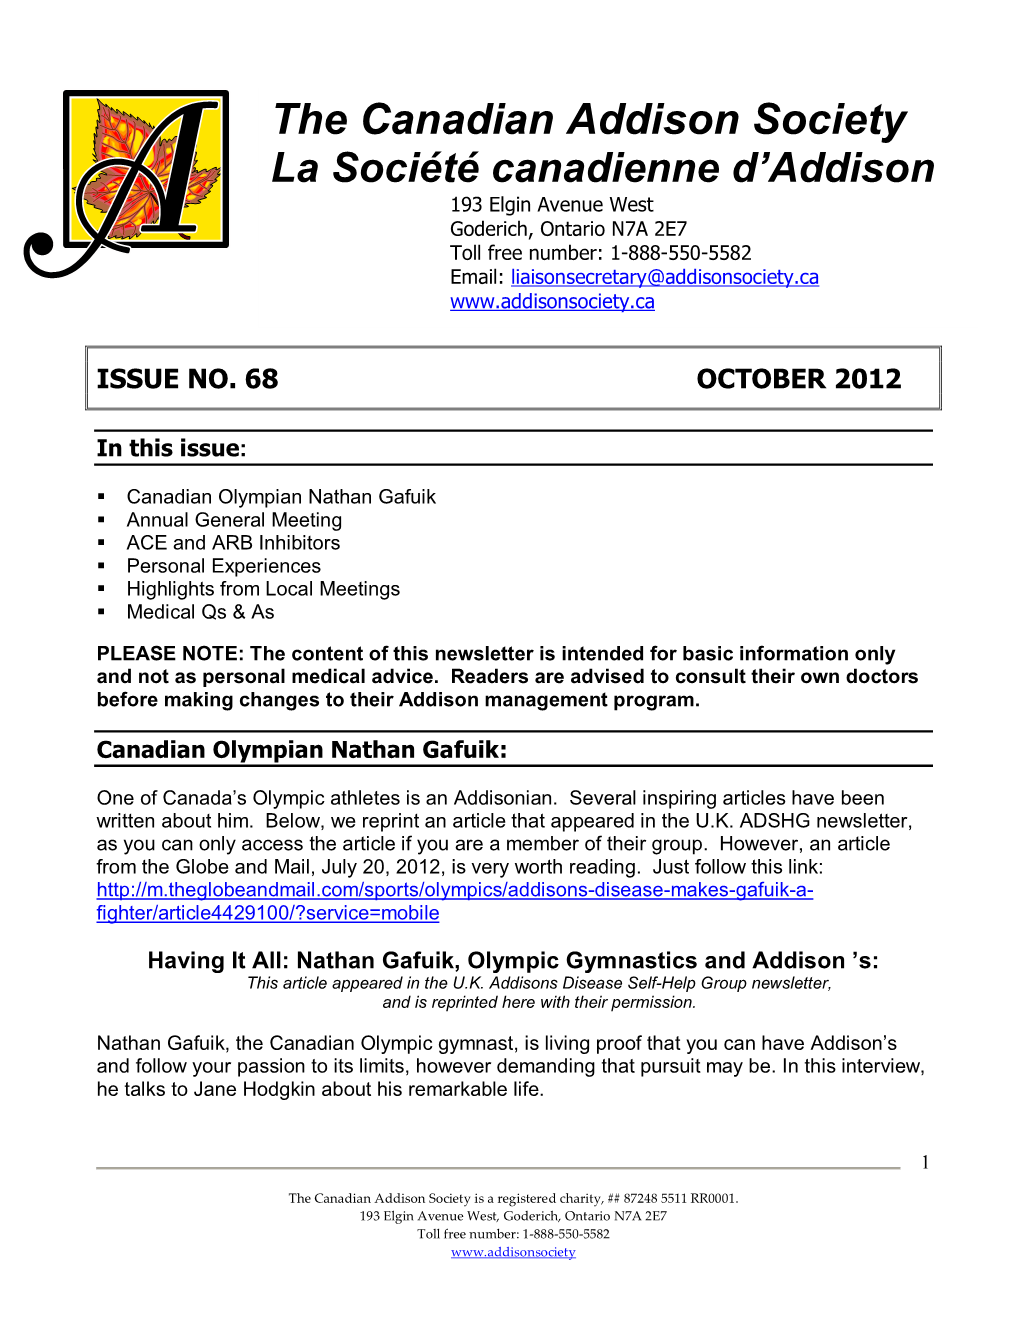 The Canadian Addison Society La Société Canadienne D'addison